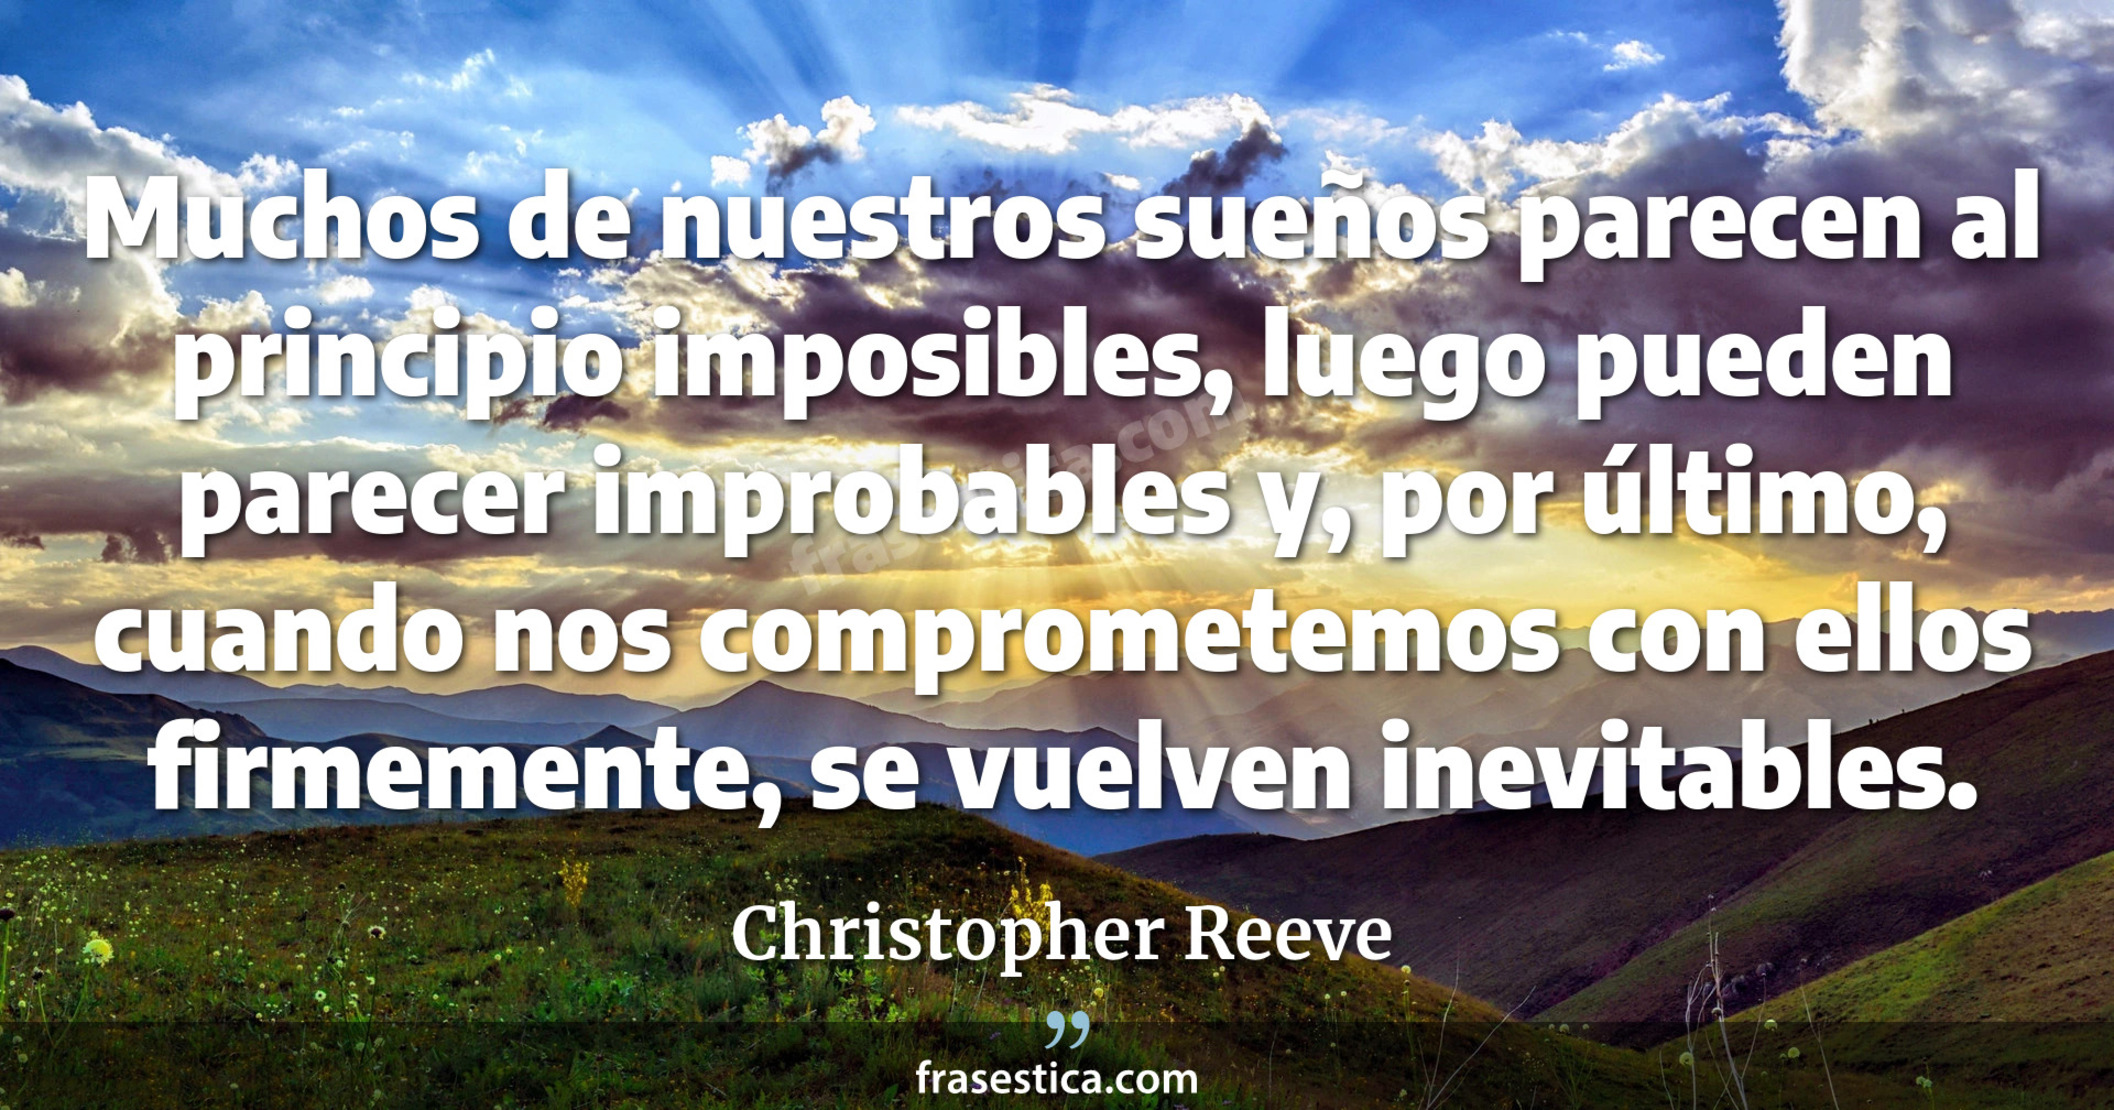 Muchos de nuestros sueños parecen al principio imposibles, luego pueden parecer improbables y, por último, cuando nos comprometemos con ellos firmemente, se vuelven inevitables. - Christopher Reeve